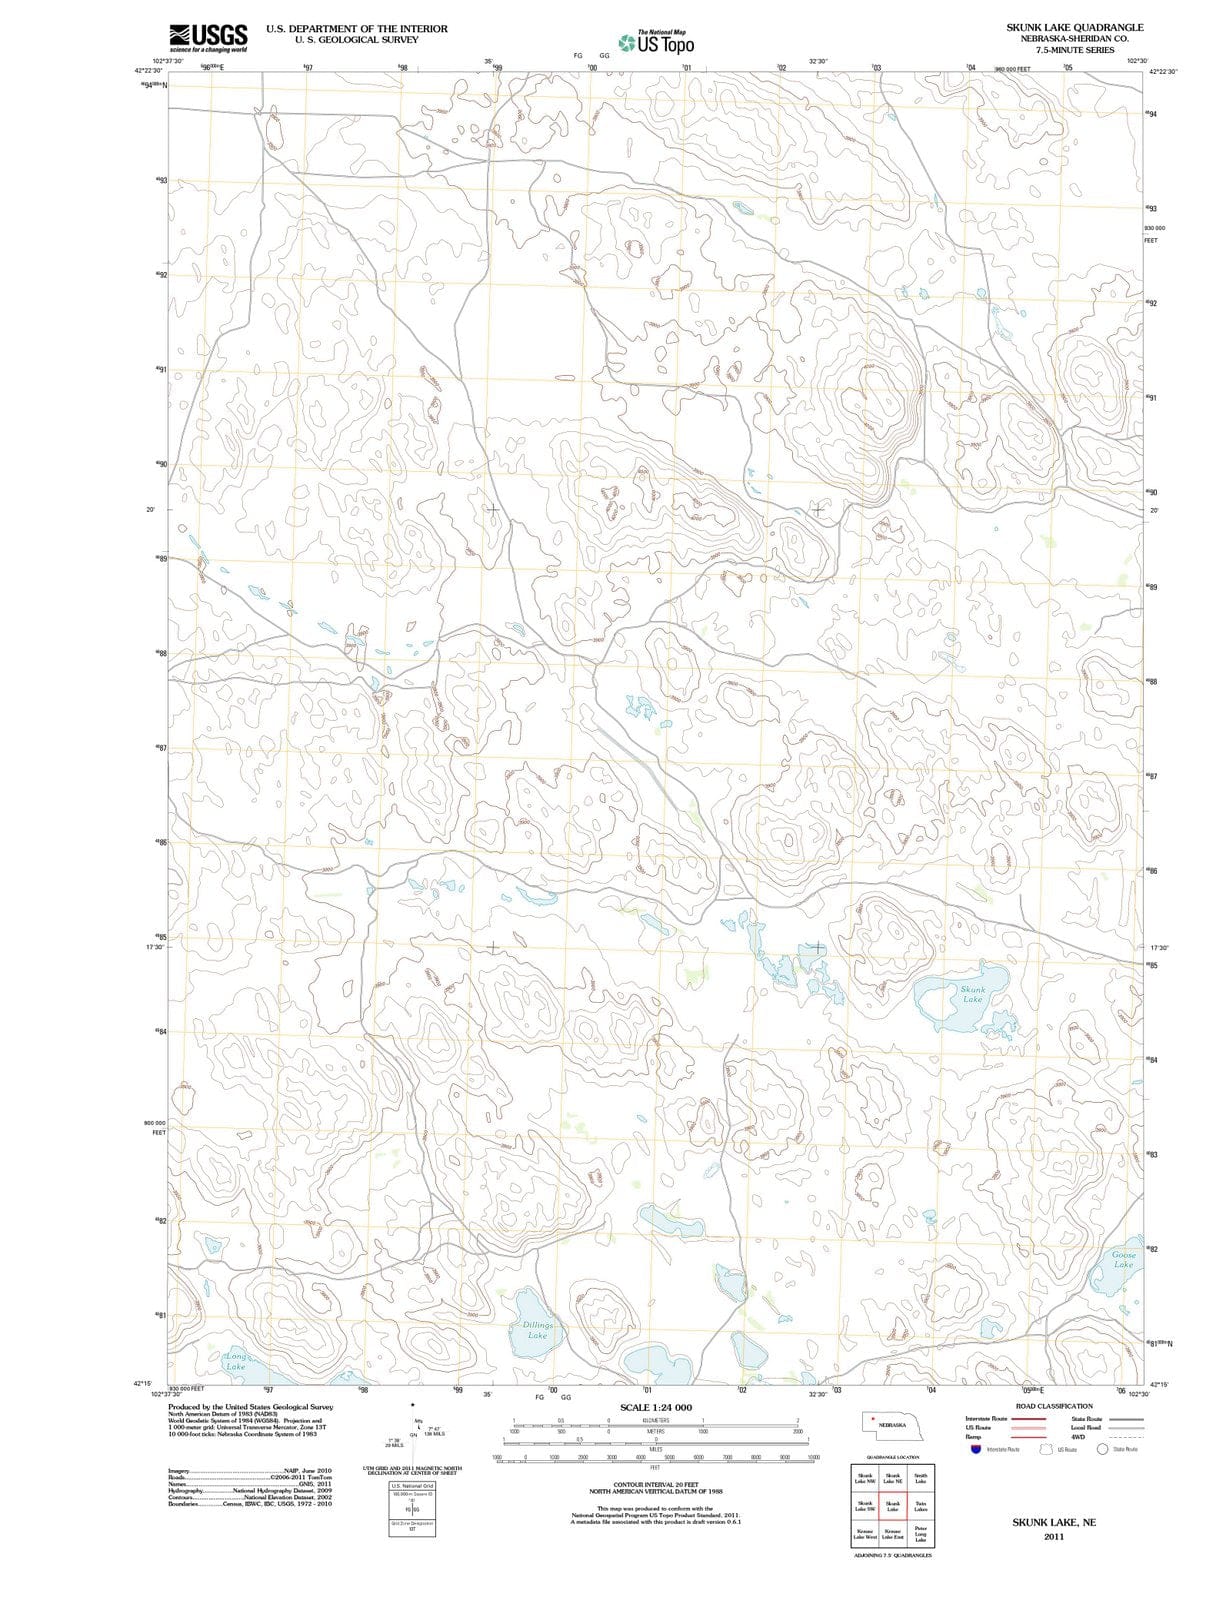 2011 Skunk Lake, NE - Nebraska - USGS Topographic Map v4